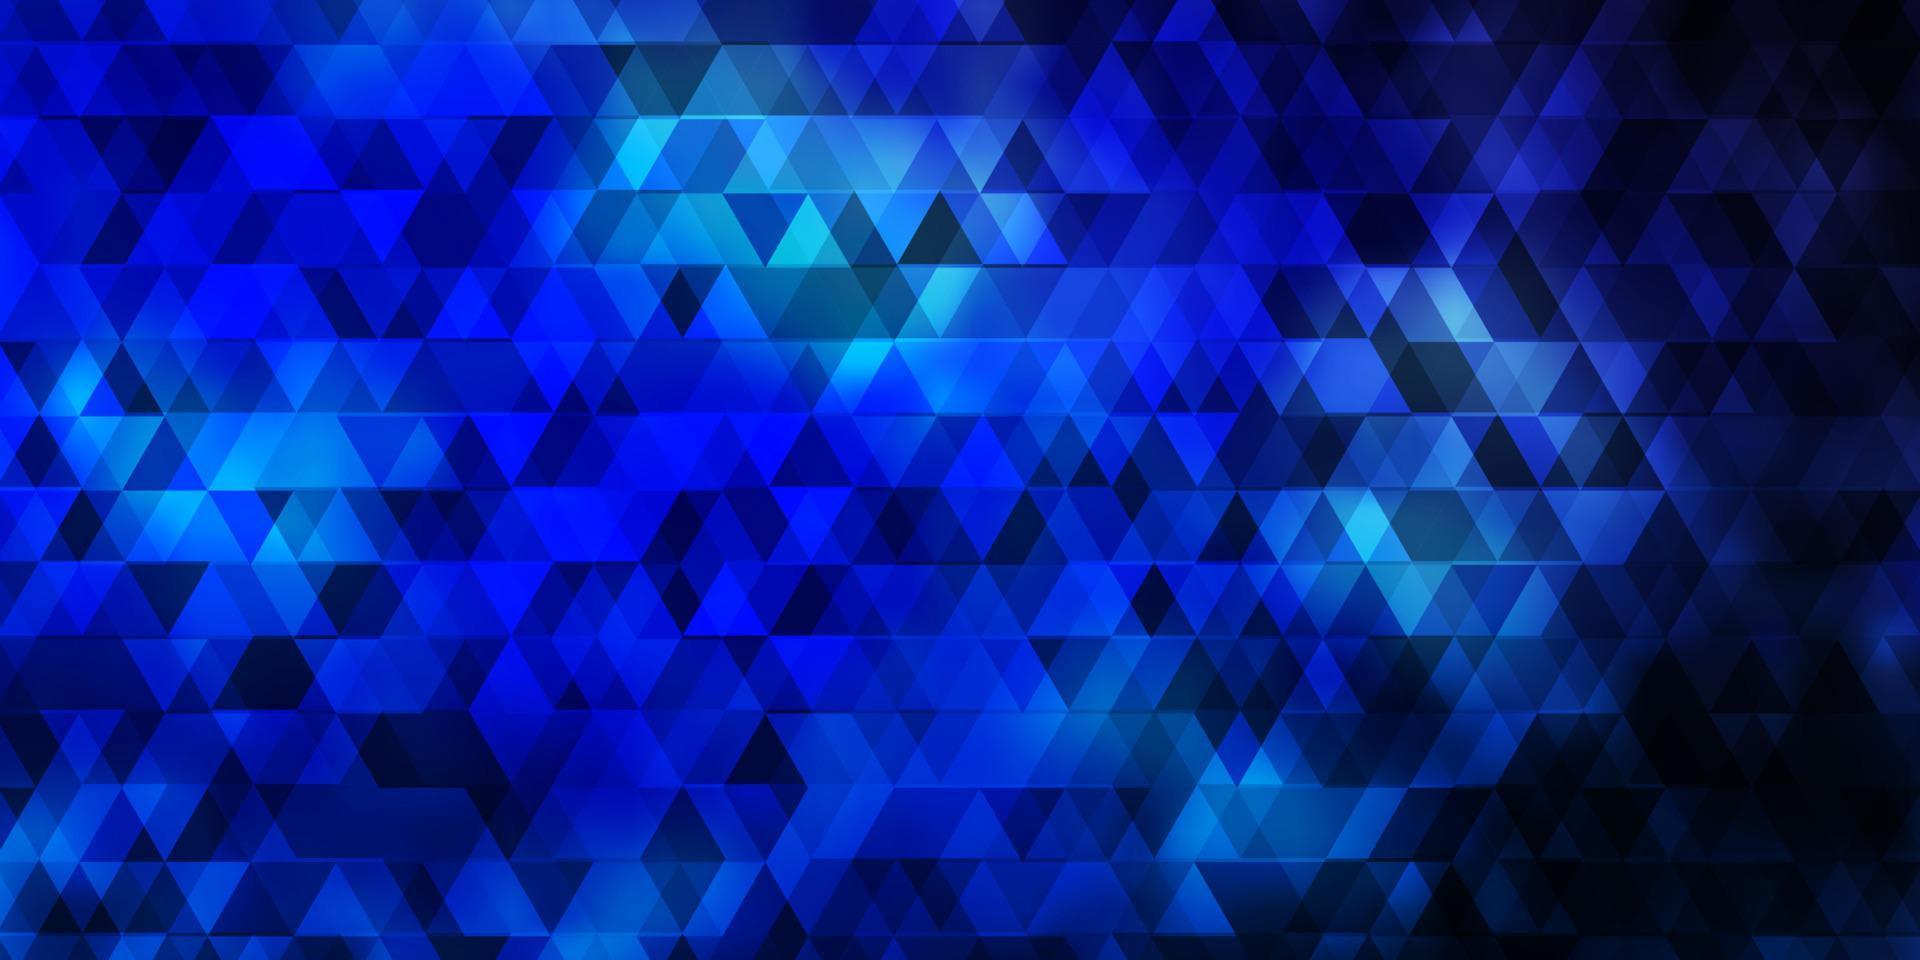 sfondo vettoriale azzurro con linee, triangoli.